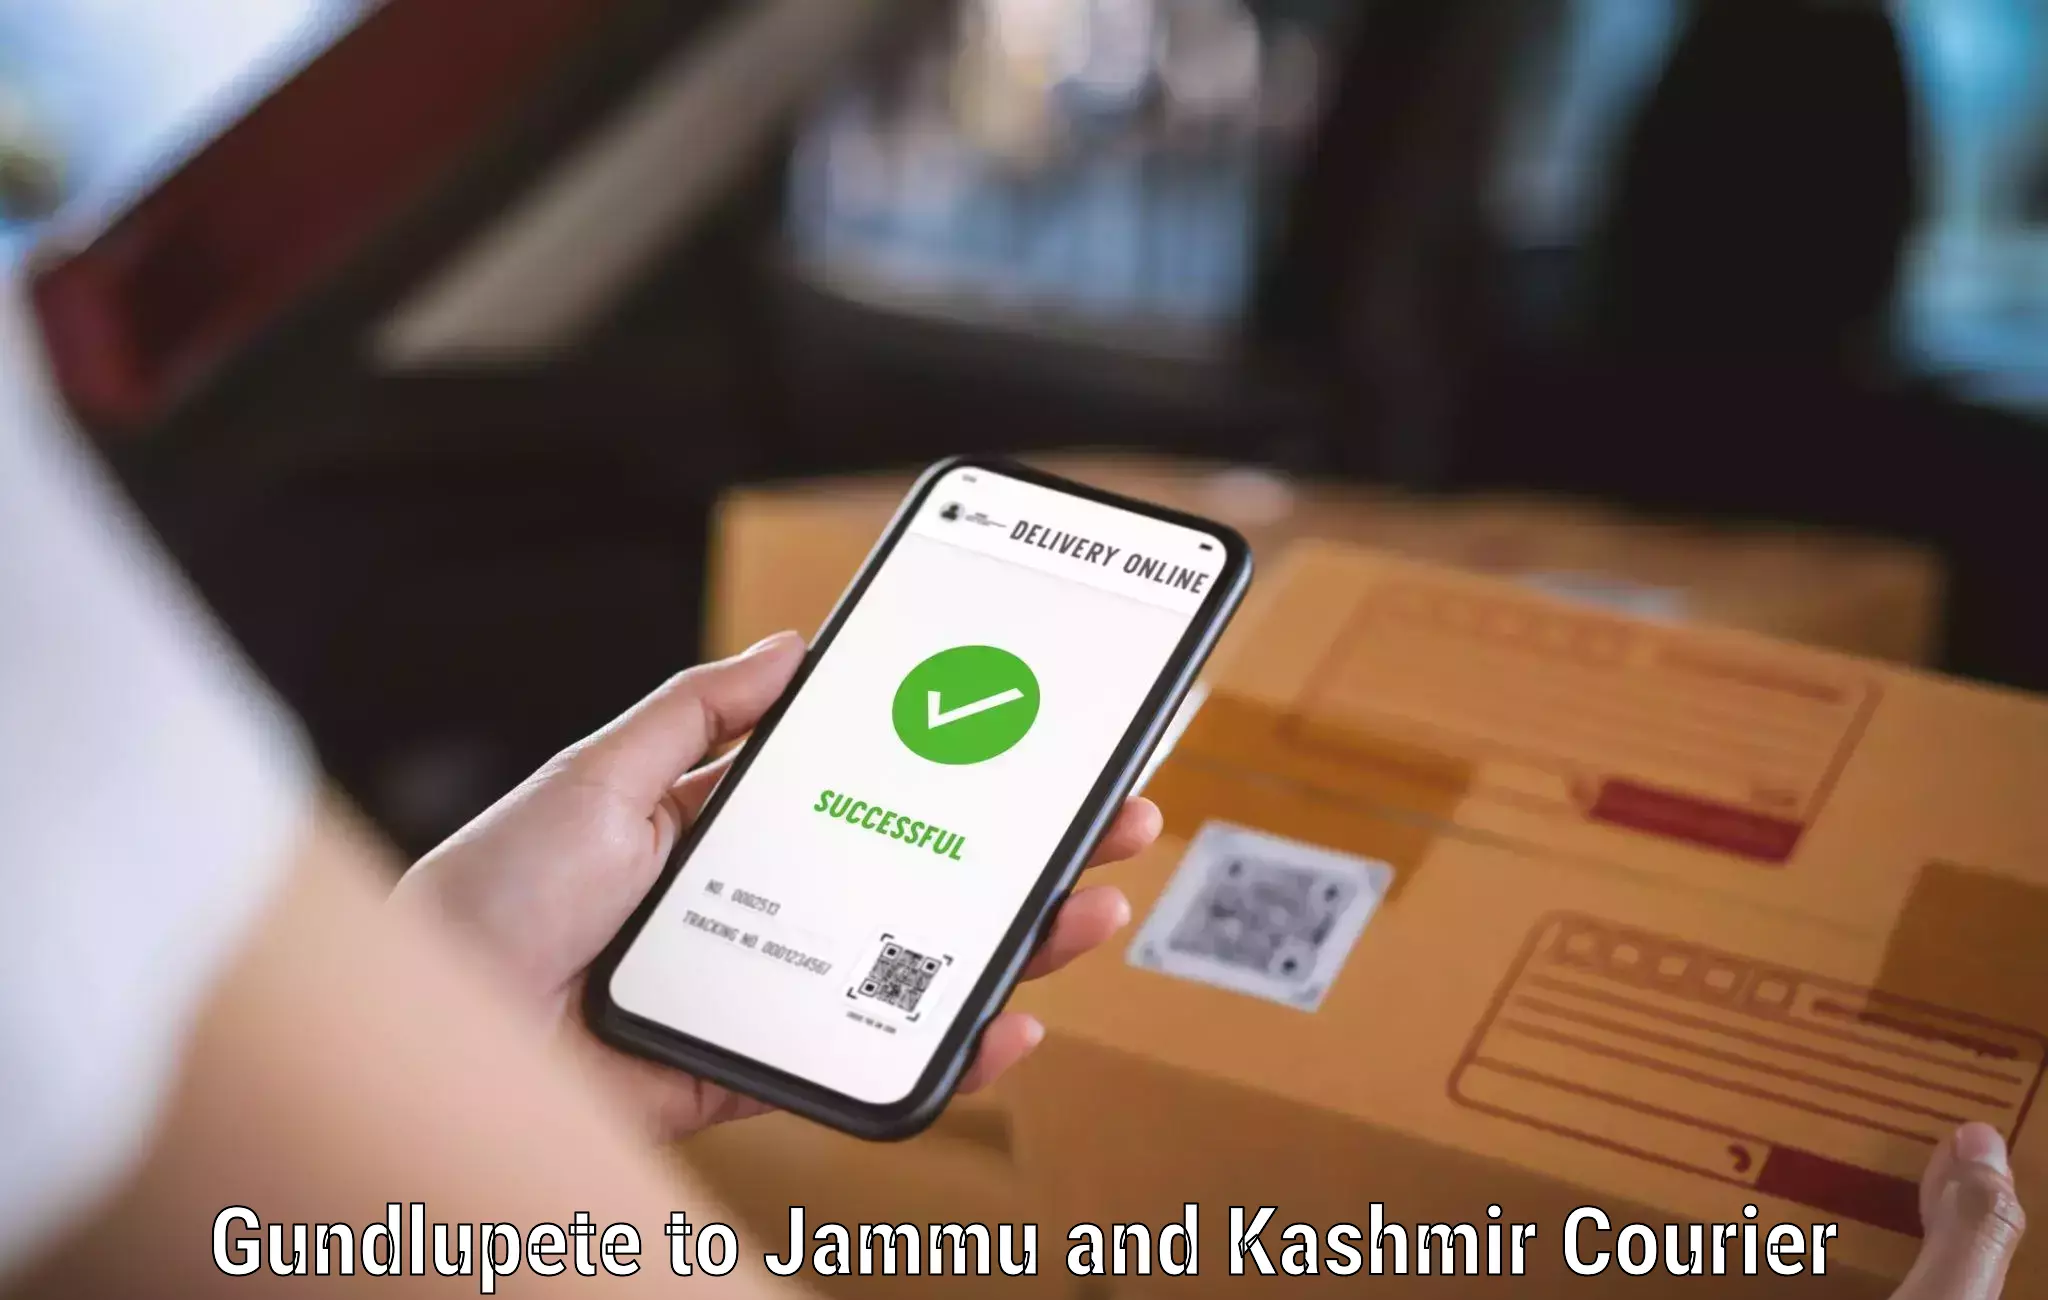 High-speed delivery Gundlupete to Srinagar Kashmir